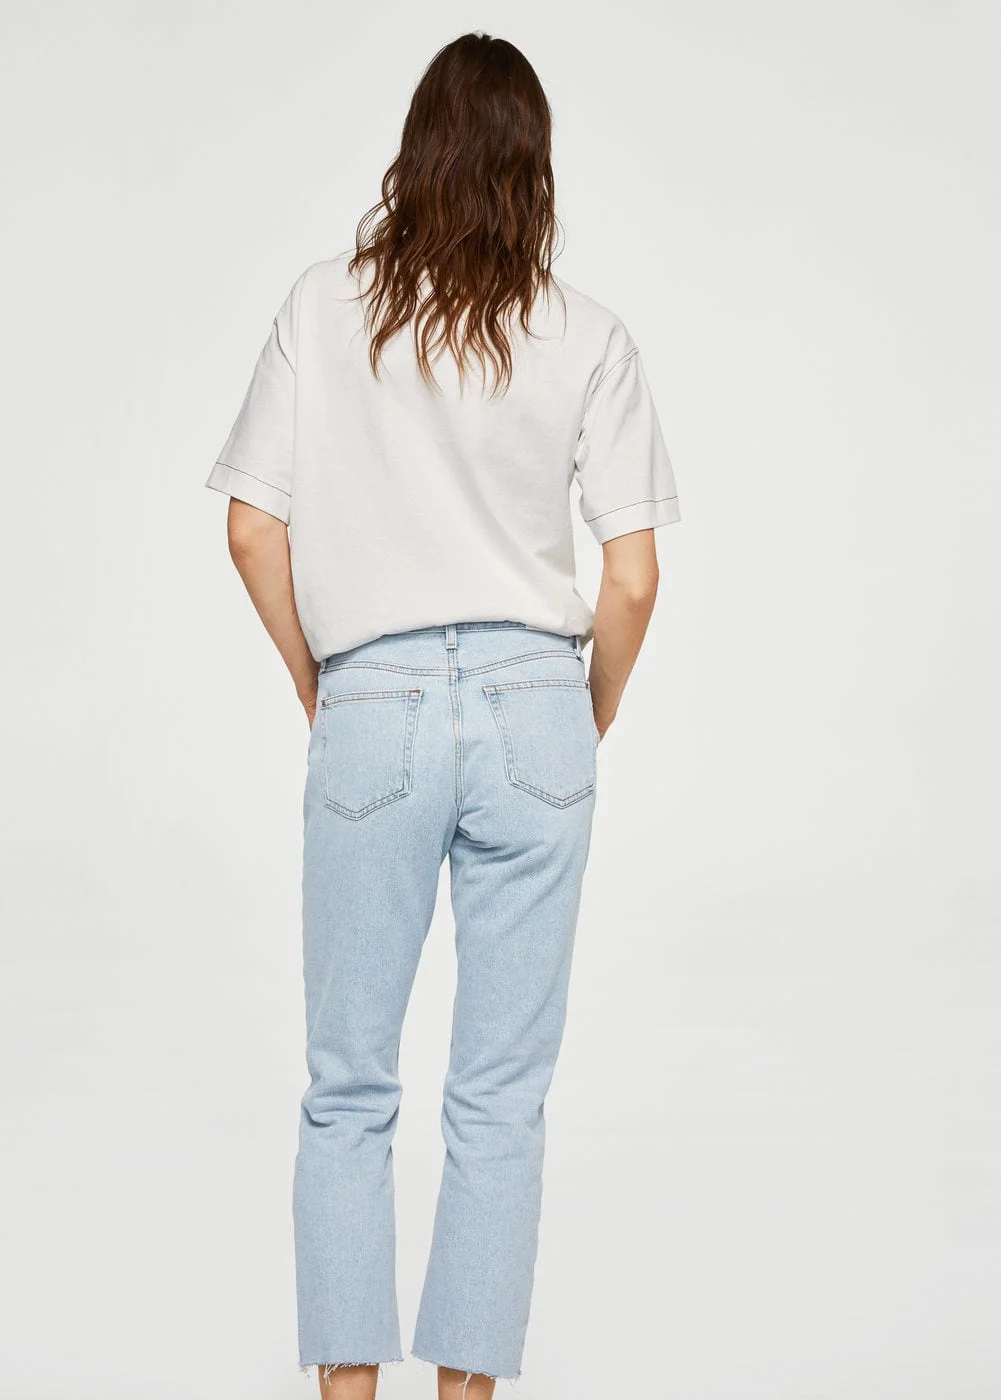 Эти джинсы станут главным хитом сезона и должны быть у каждой девушки - фото 371568